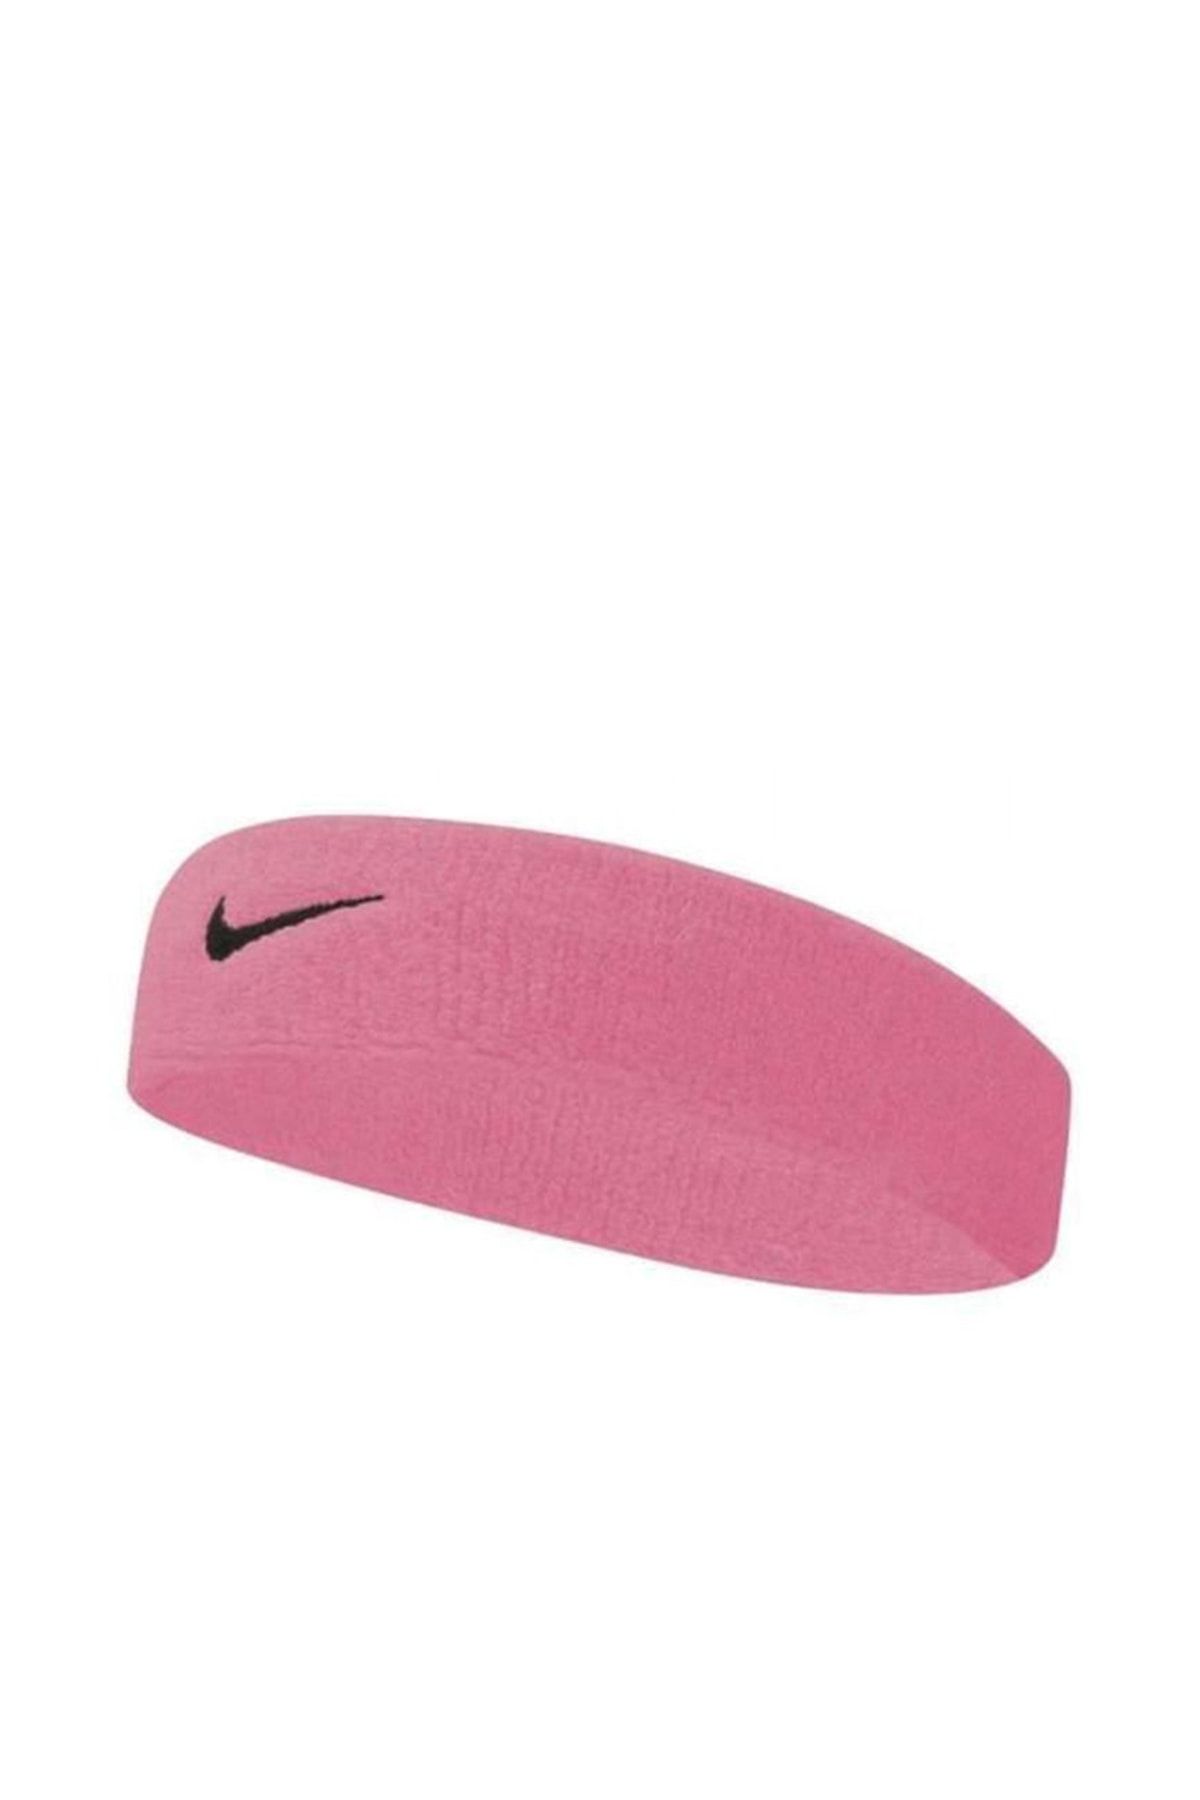 Nike Swoosh Headband Pembe Saç Bandı